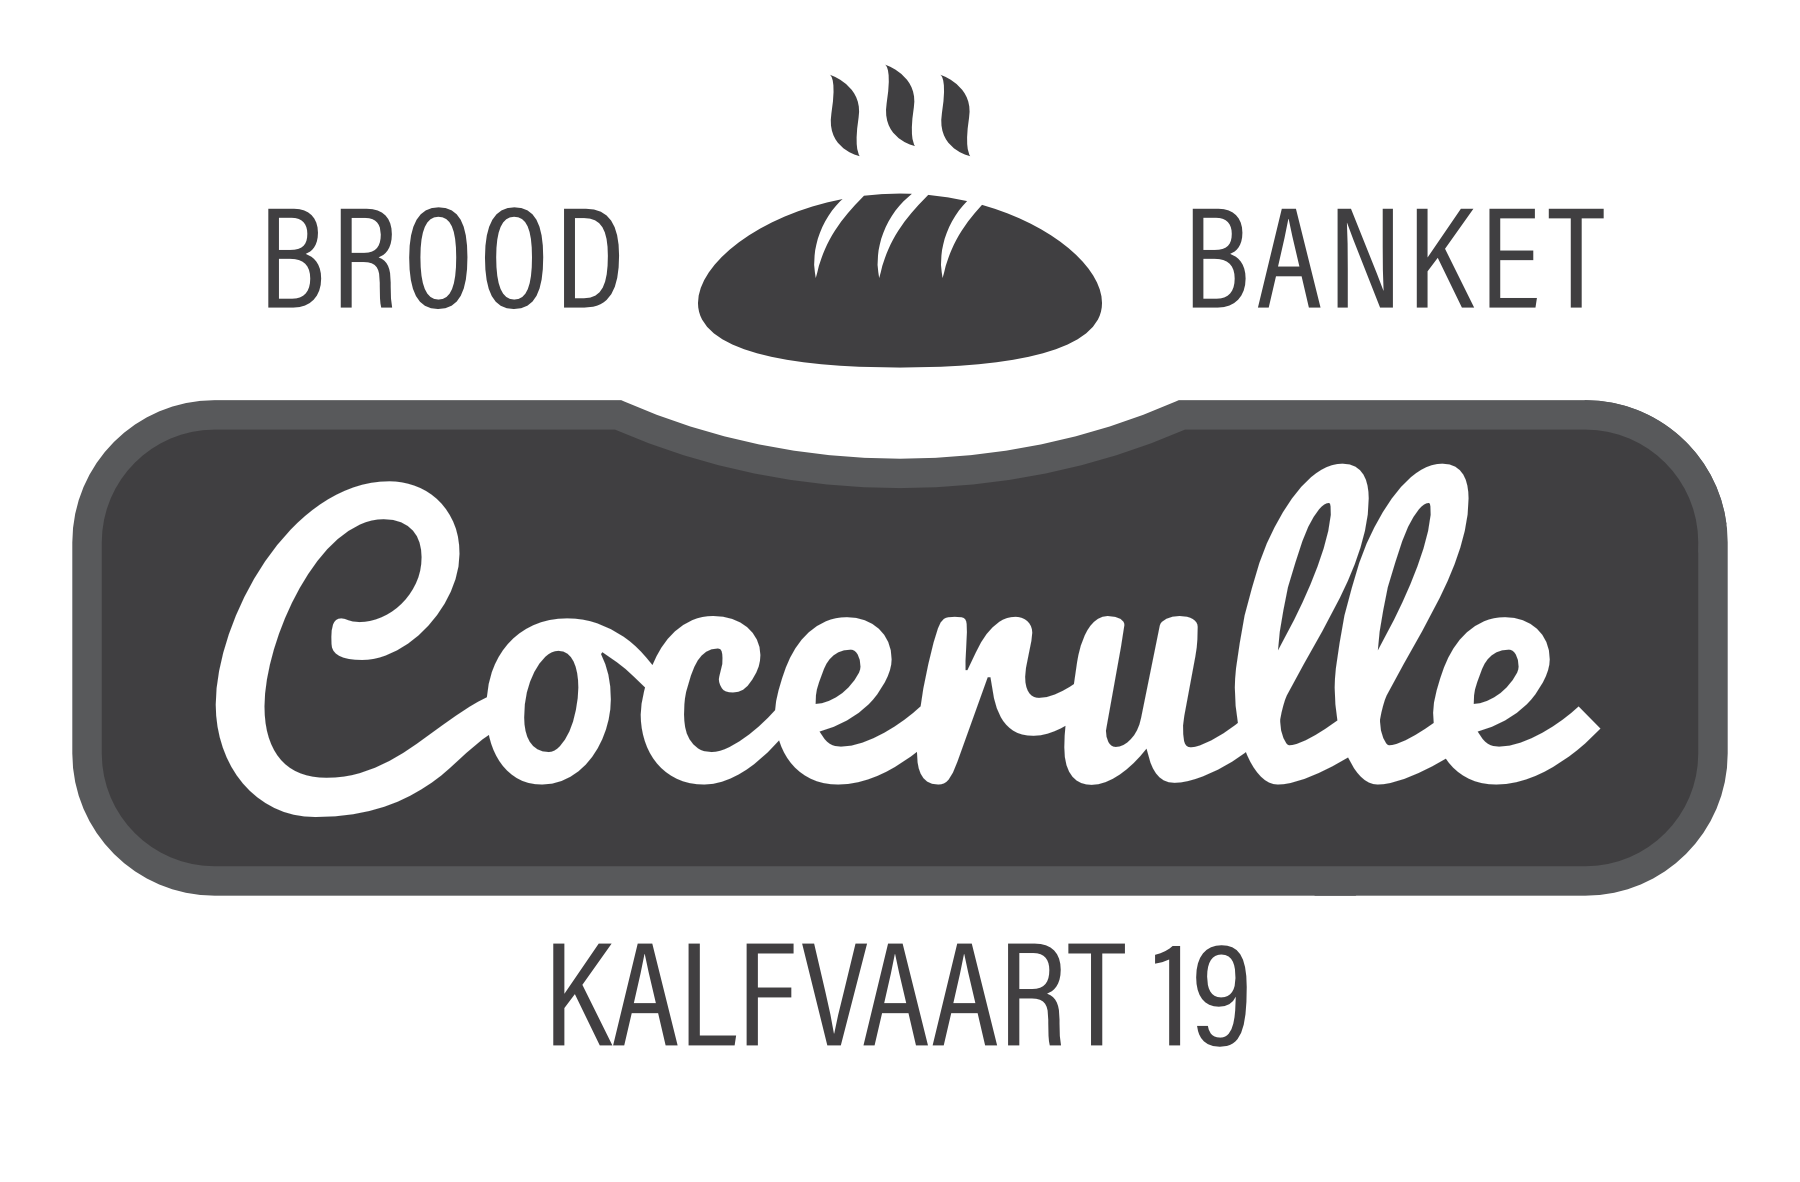 Bakkerij Cocerulle LogoKalfvaart